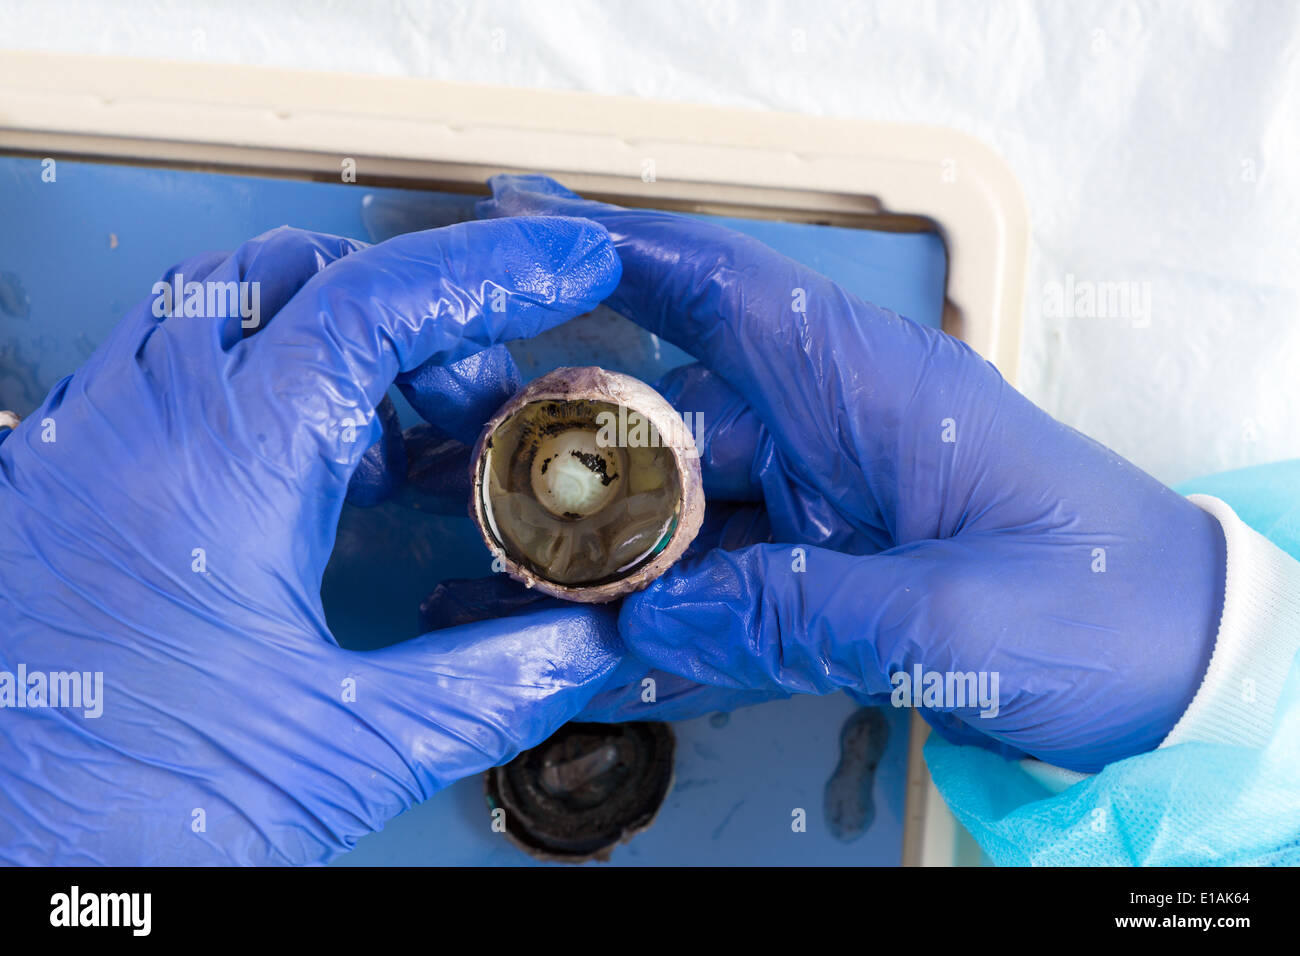 Globe oculaire d'une brebis à la recherche à travers la pupille de l'objectif affiché dans la main gantée d'un étudiant à l'université de physiologie Banque D'Images